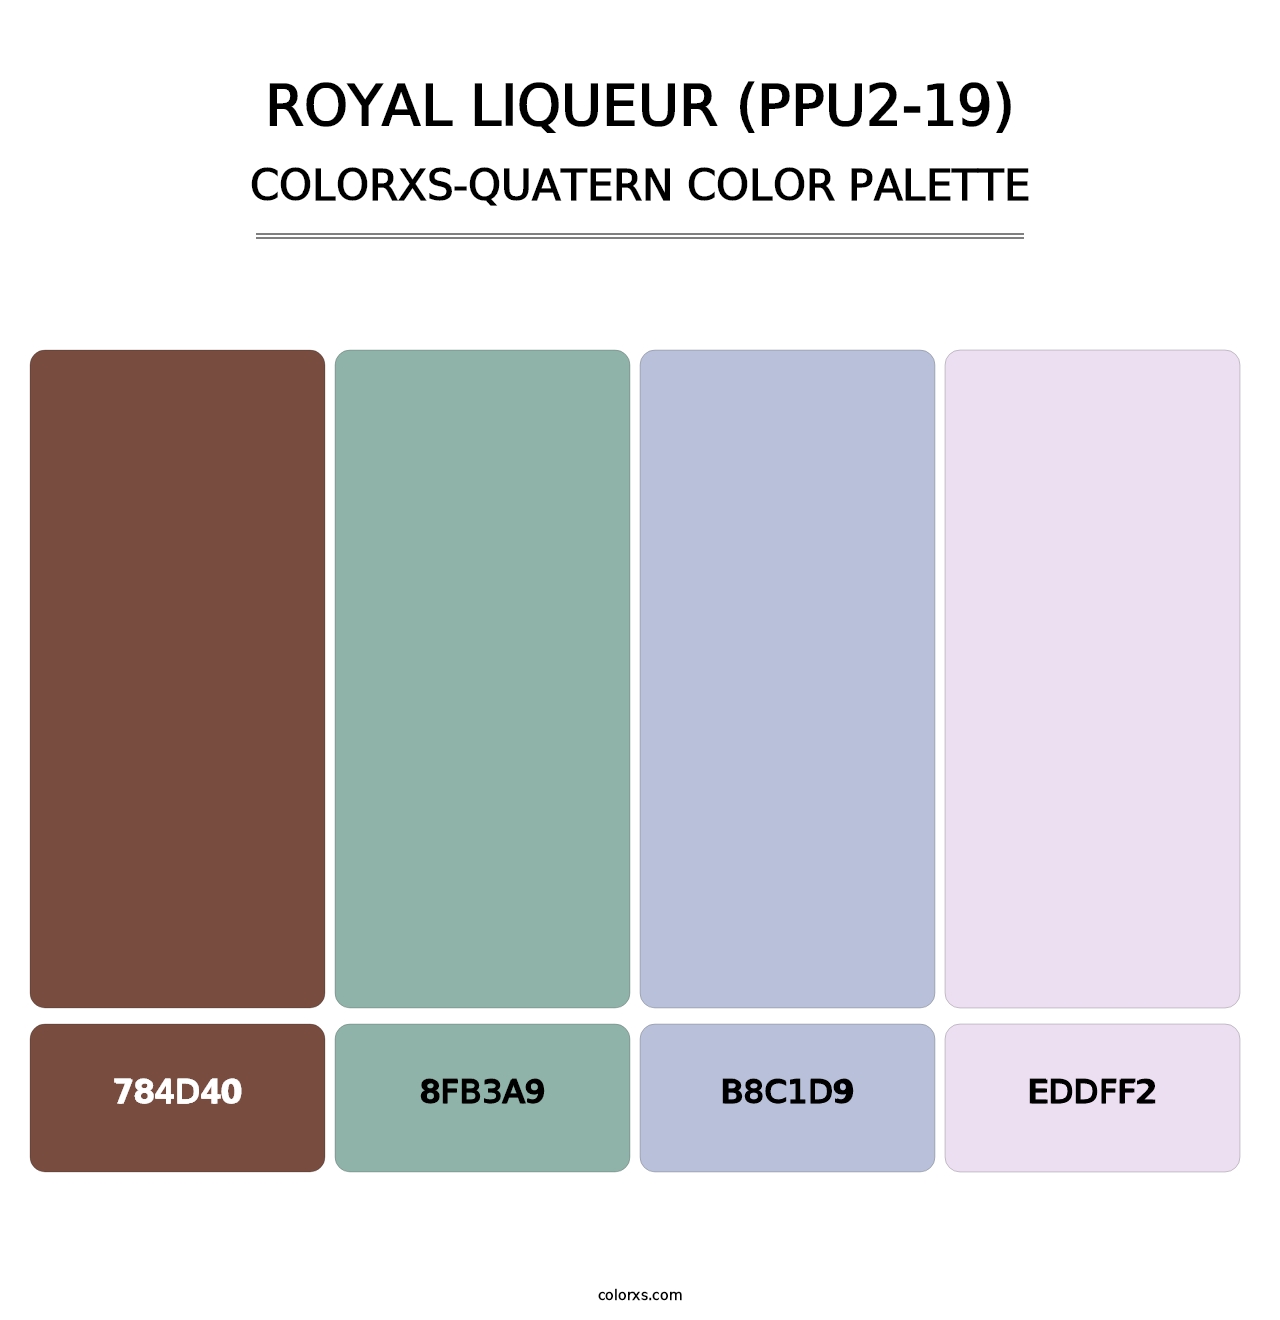 Royal Liqueur (PPU2-19) - Colorxs Quatern Palette